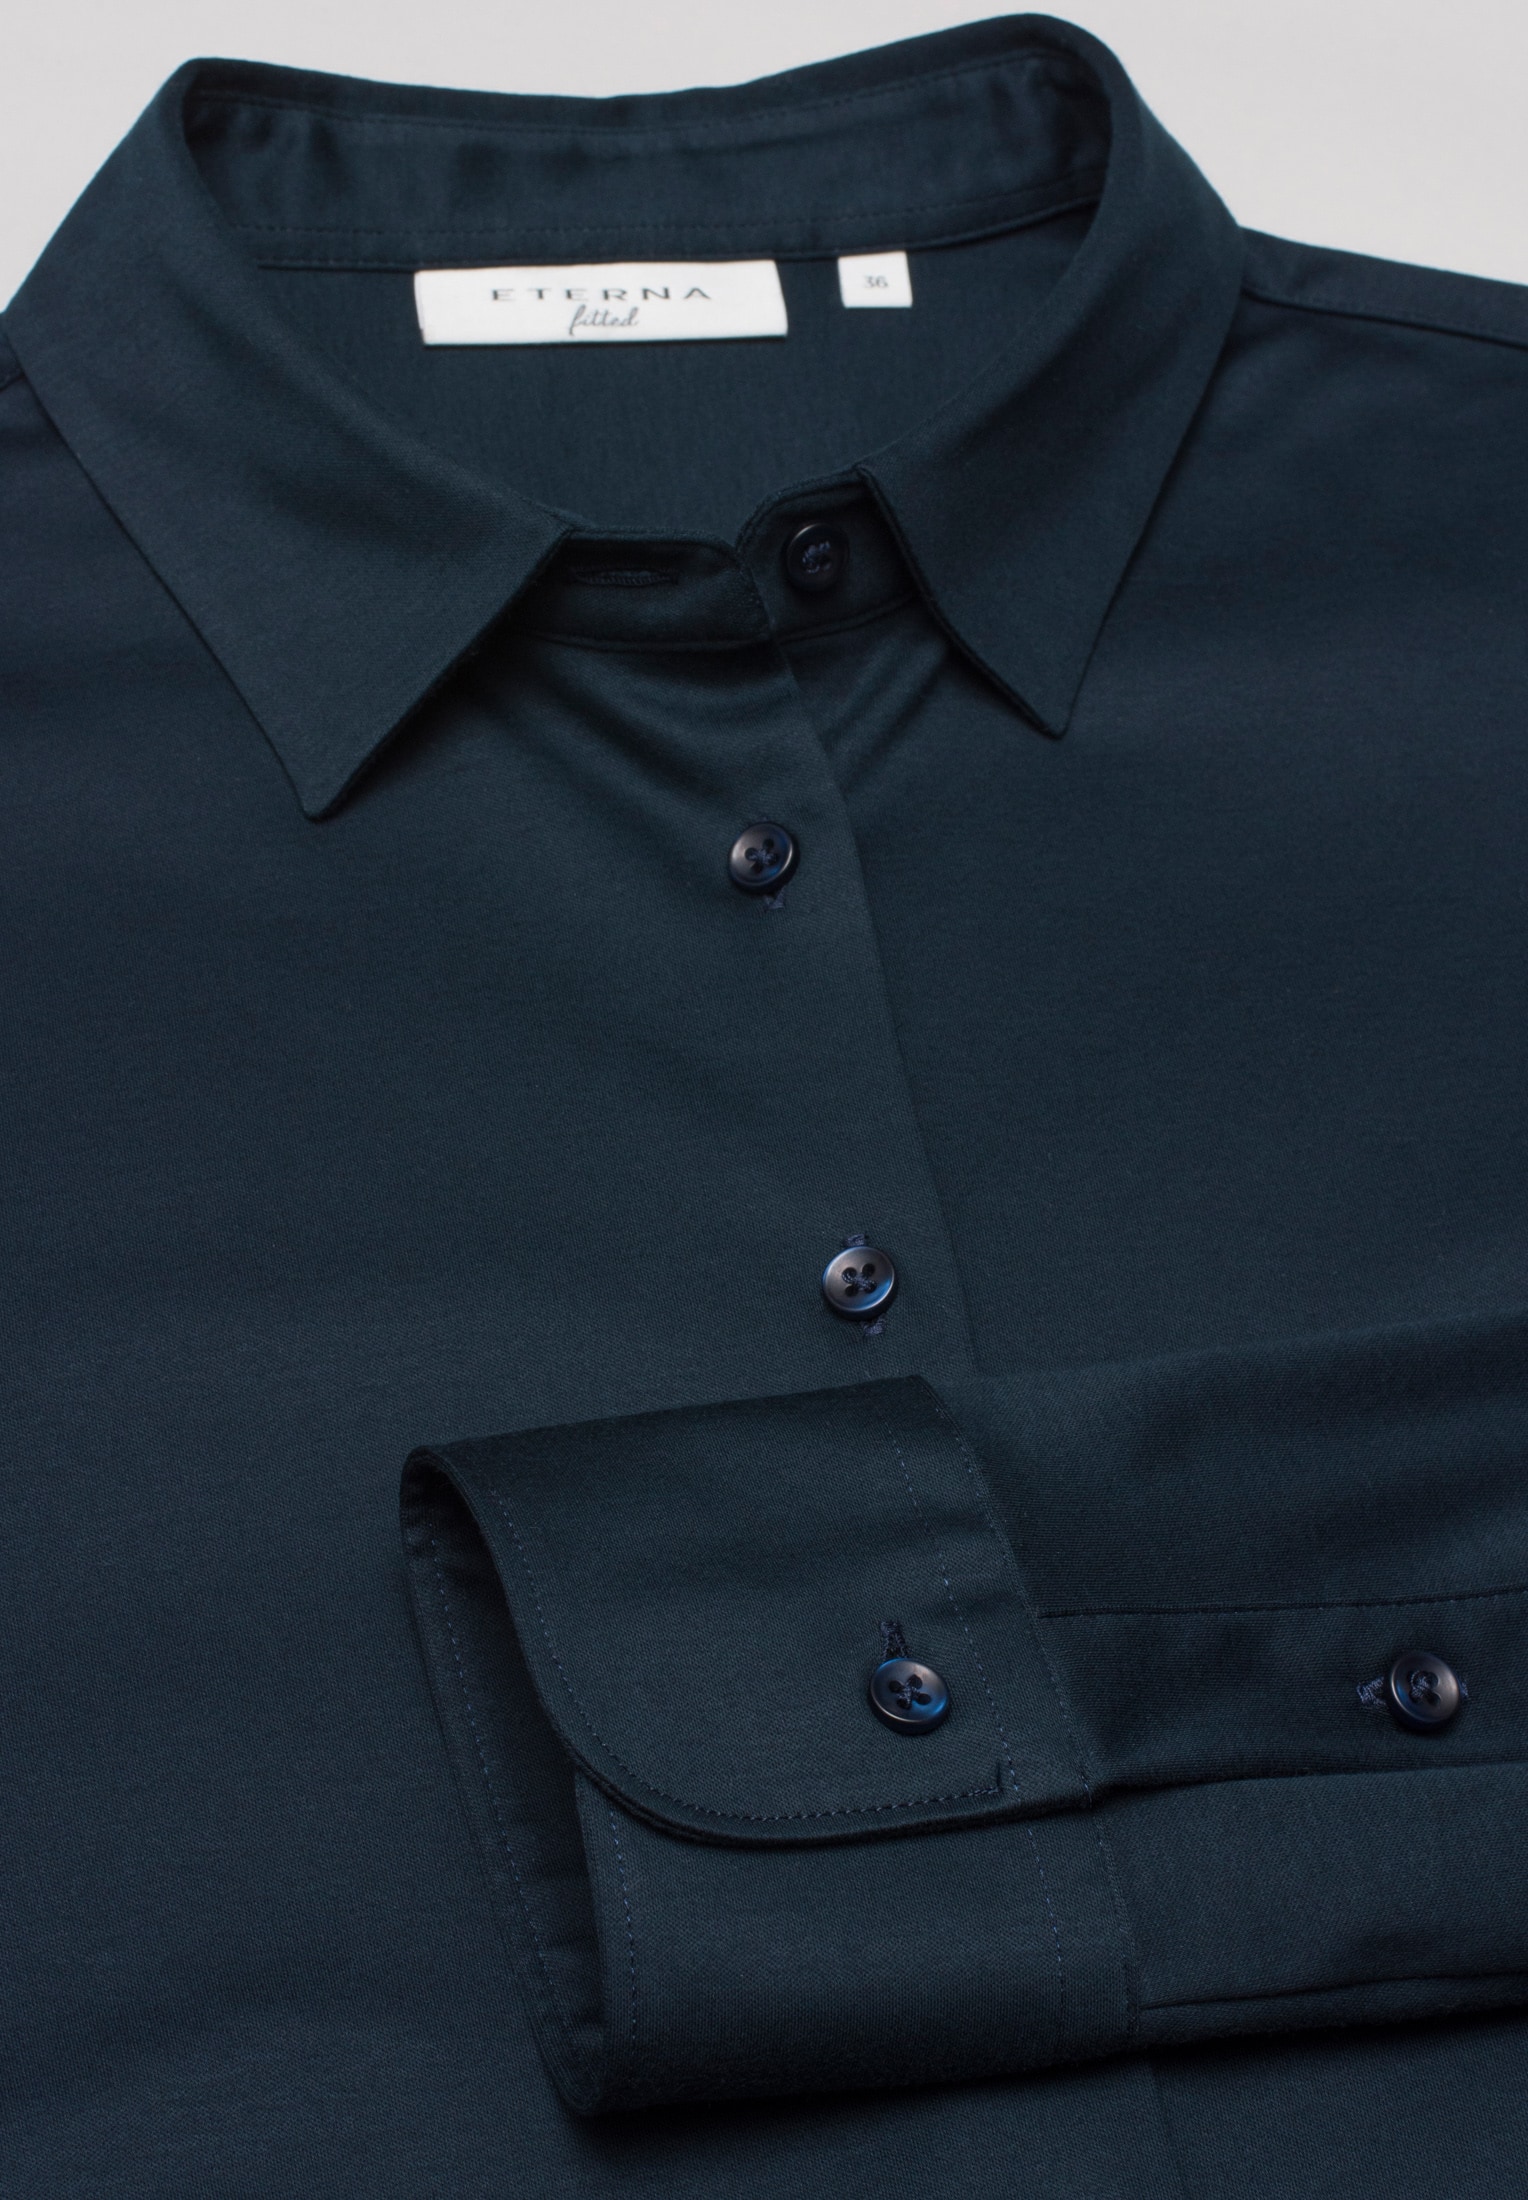 Jersey Shirt Bluse in navy unifarben | navy | Langarm | 44 |  2BL00229-01-91-44-1/1